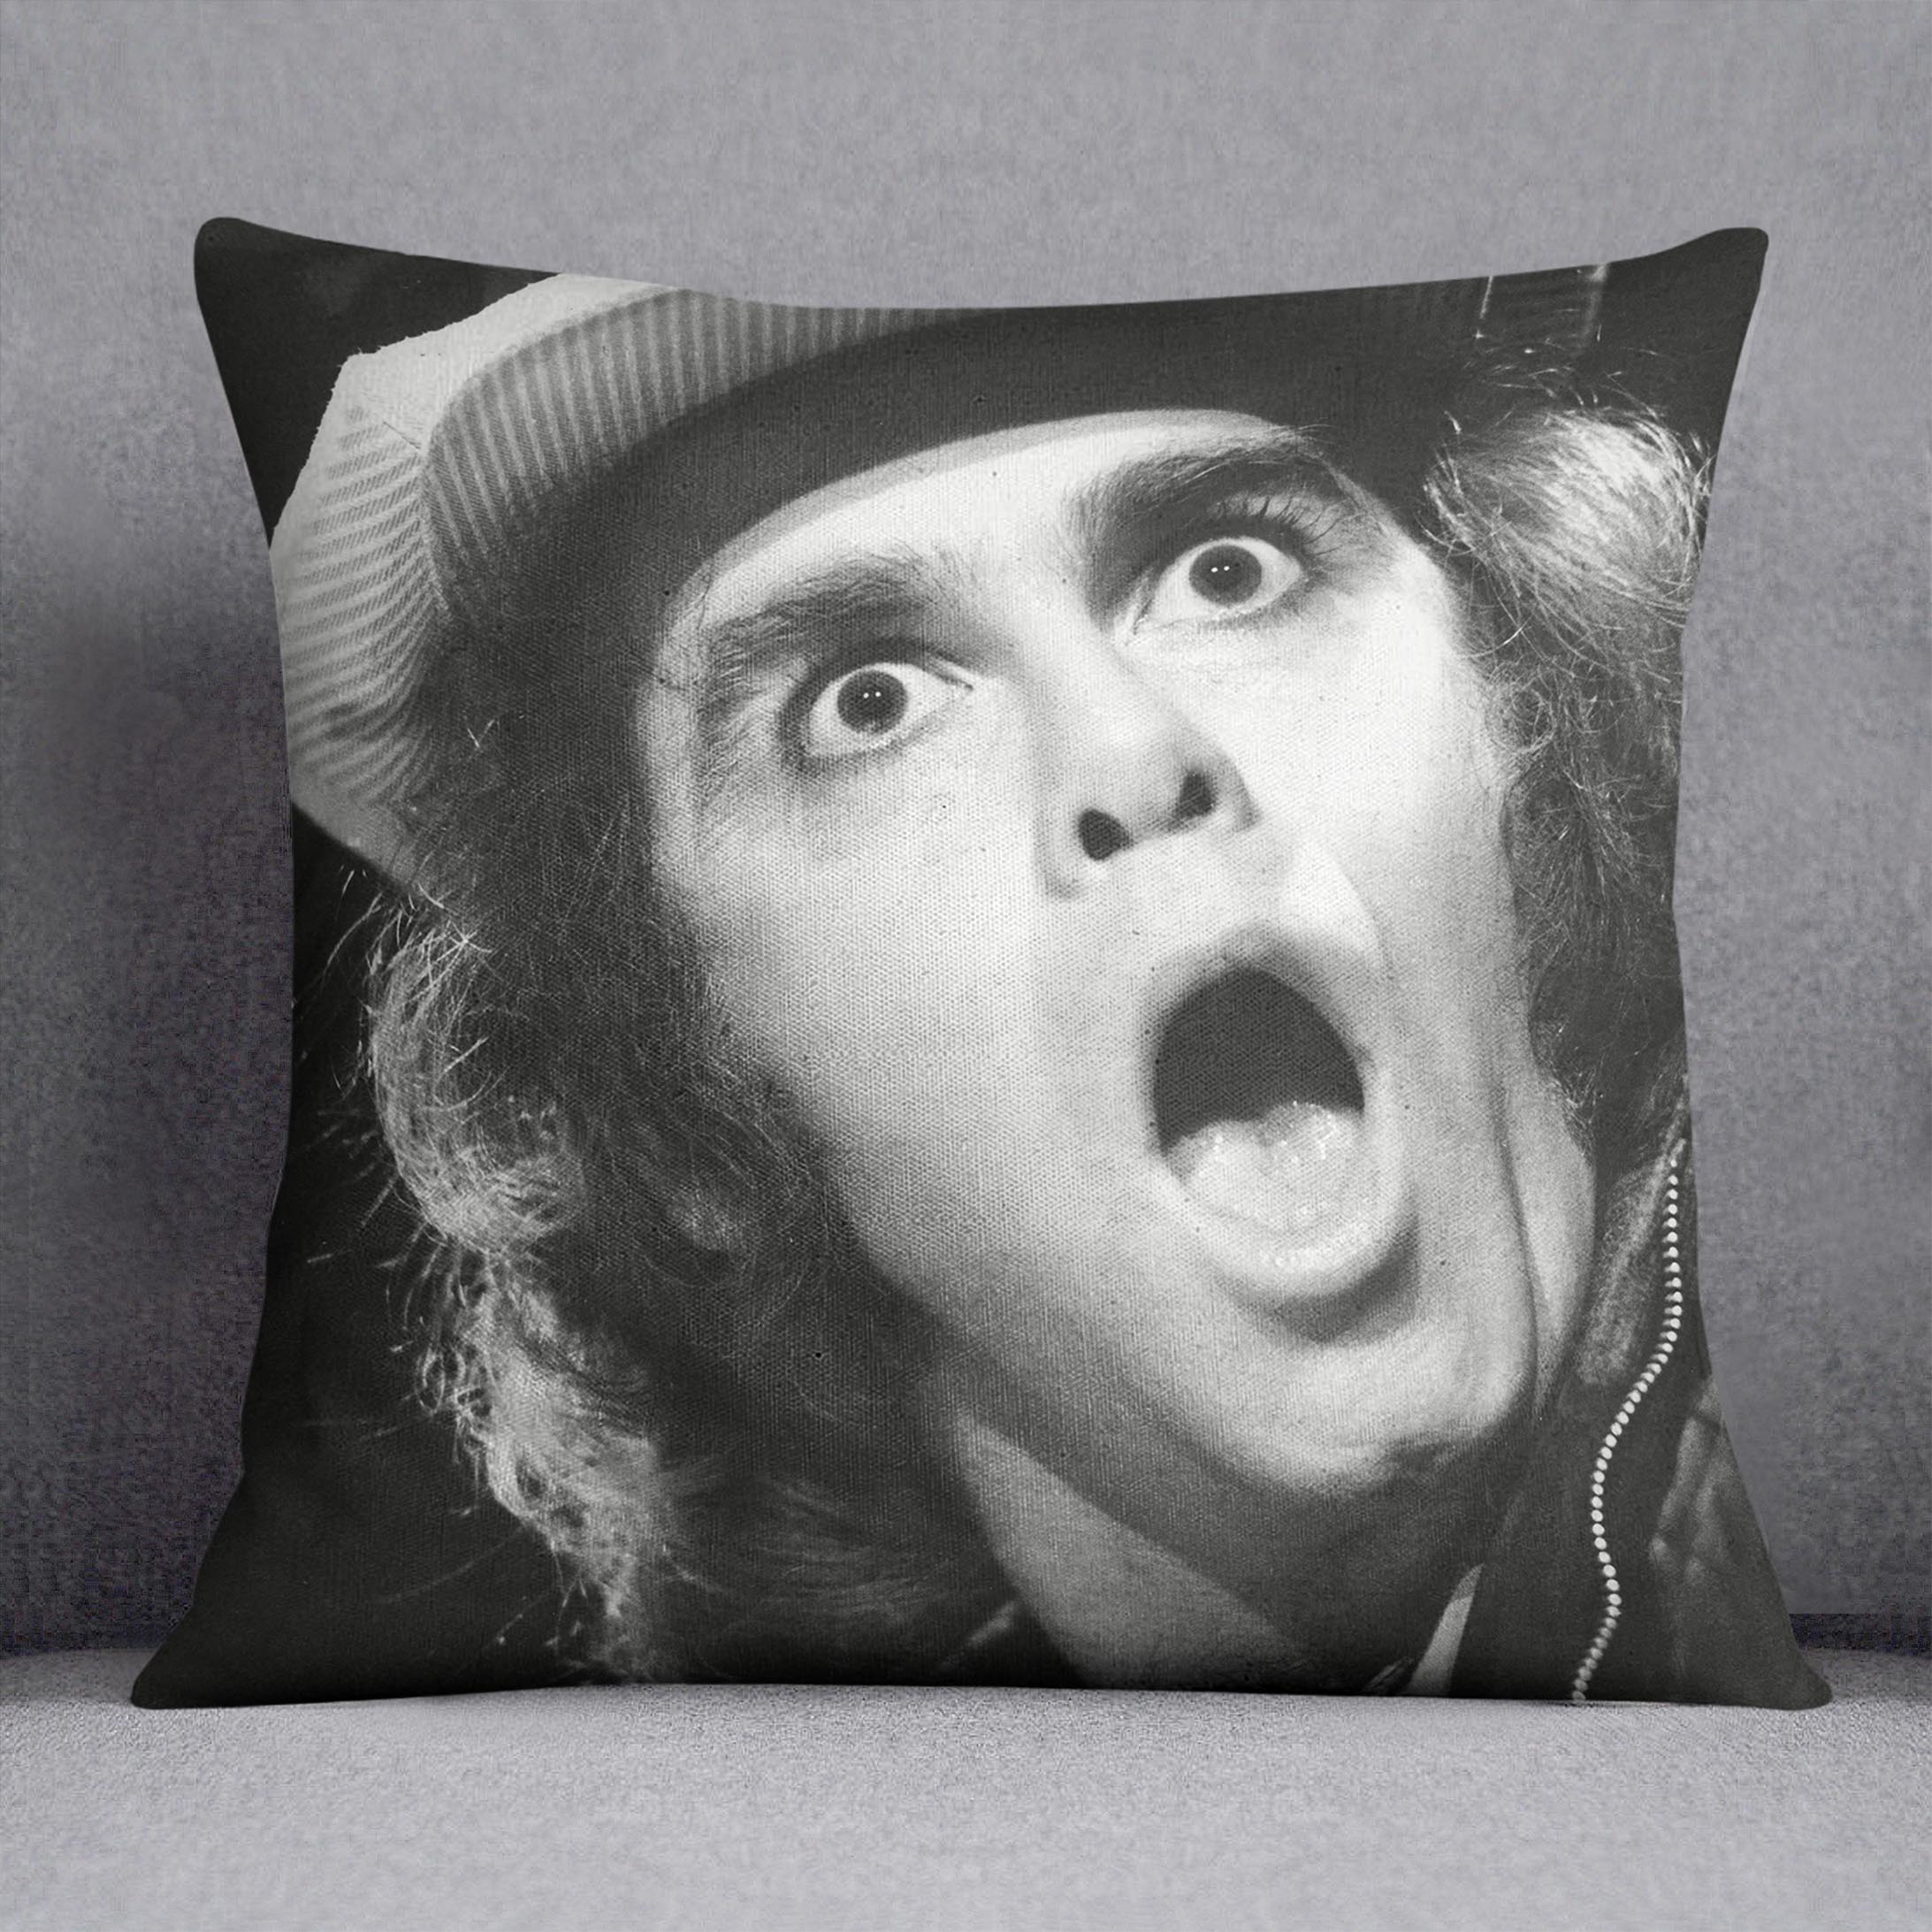 Elton John shocked Cushion